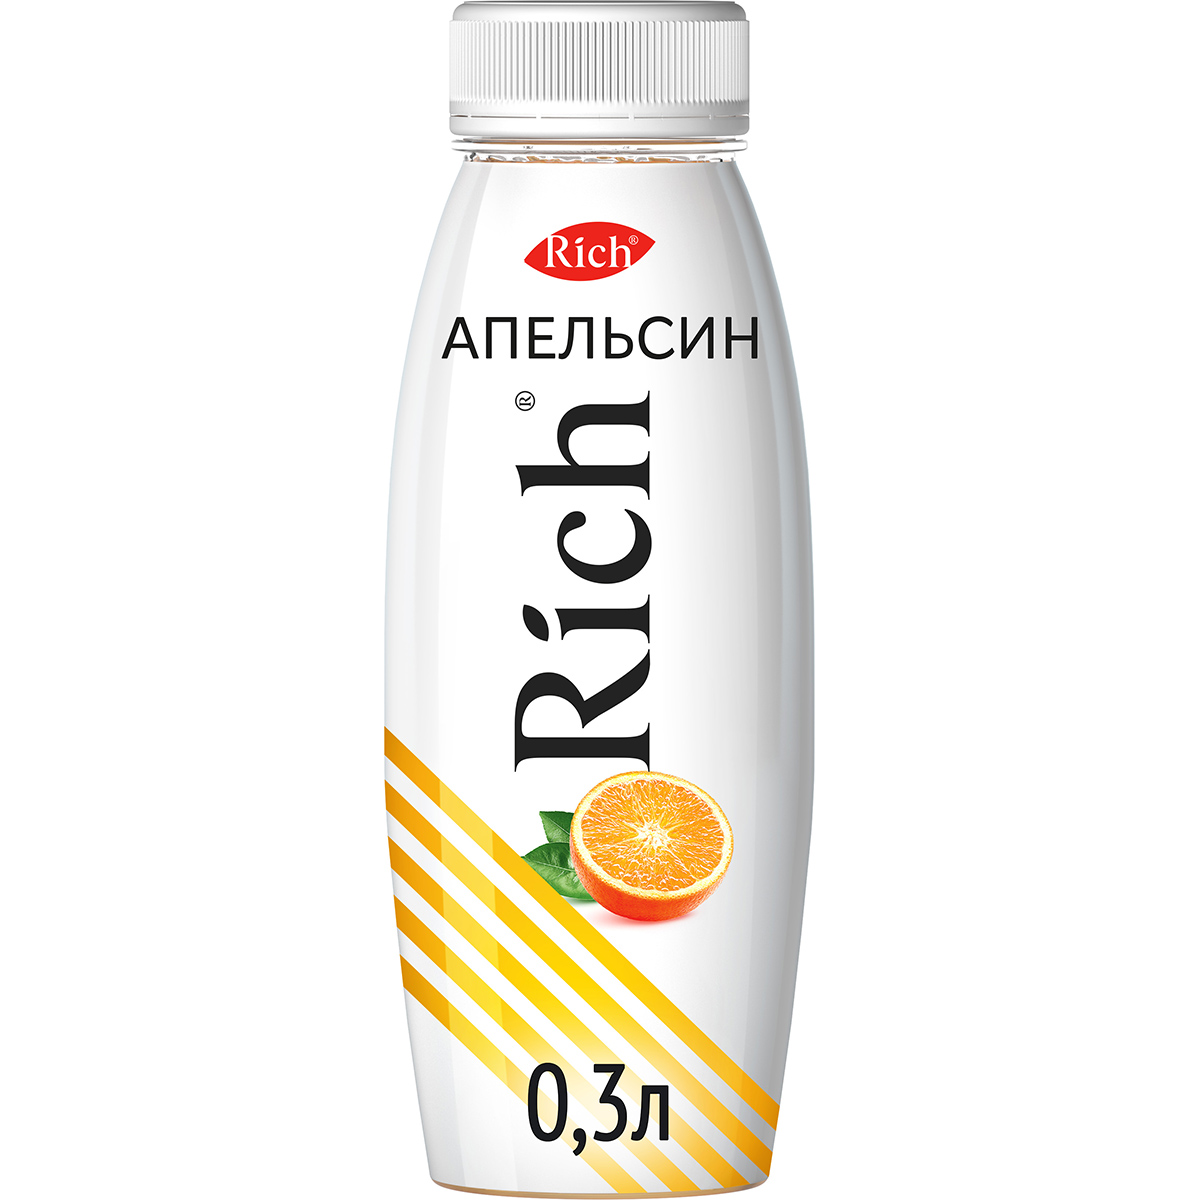 Сок Rich апельсиновый 300 мл сок rioba апельсиновый 0 25 литра 8 шт в уп